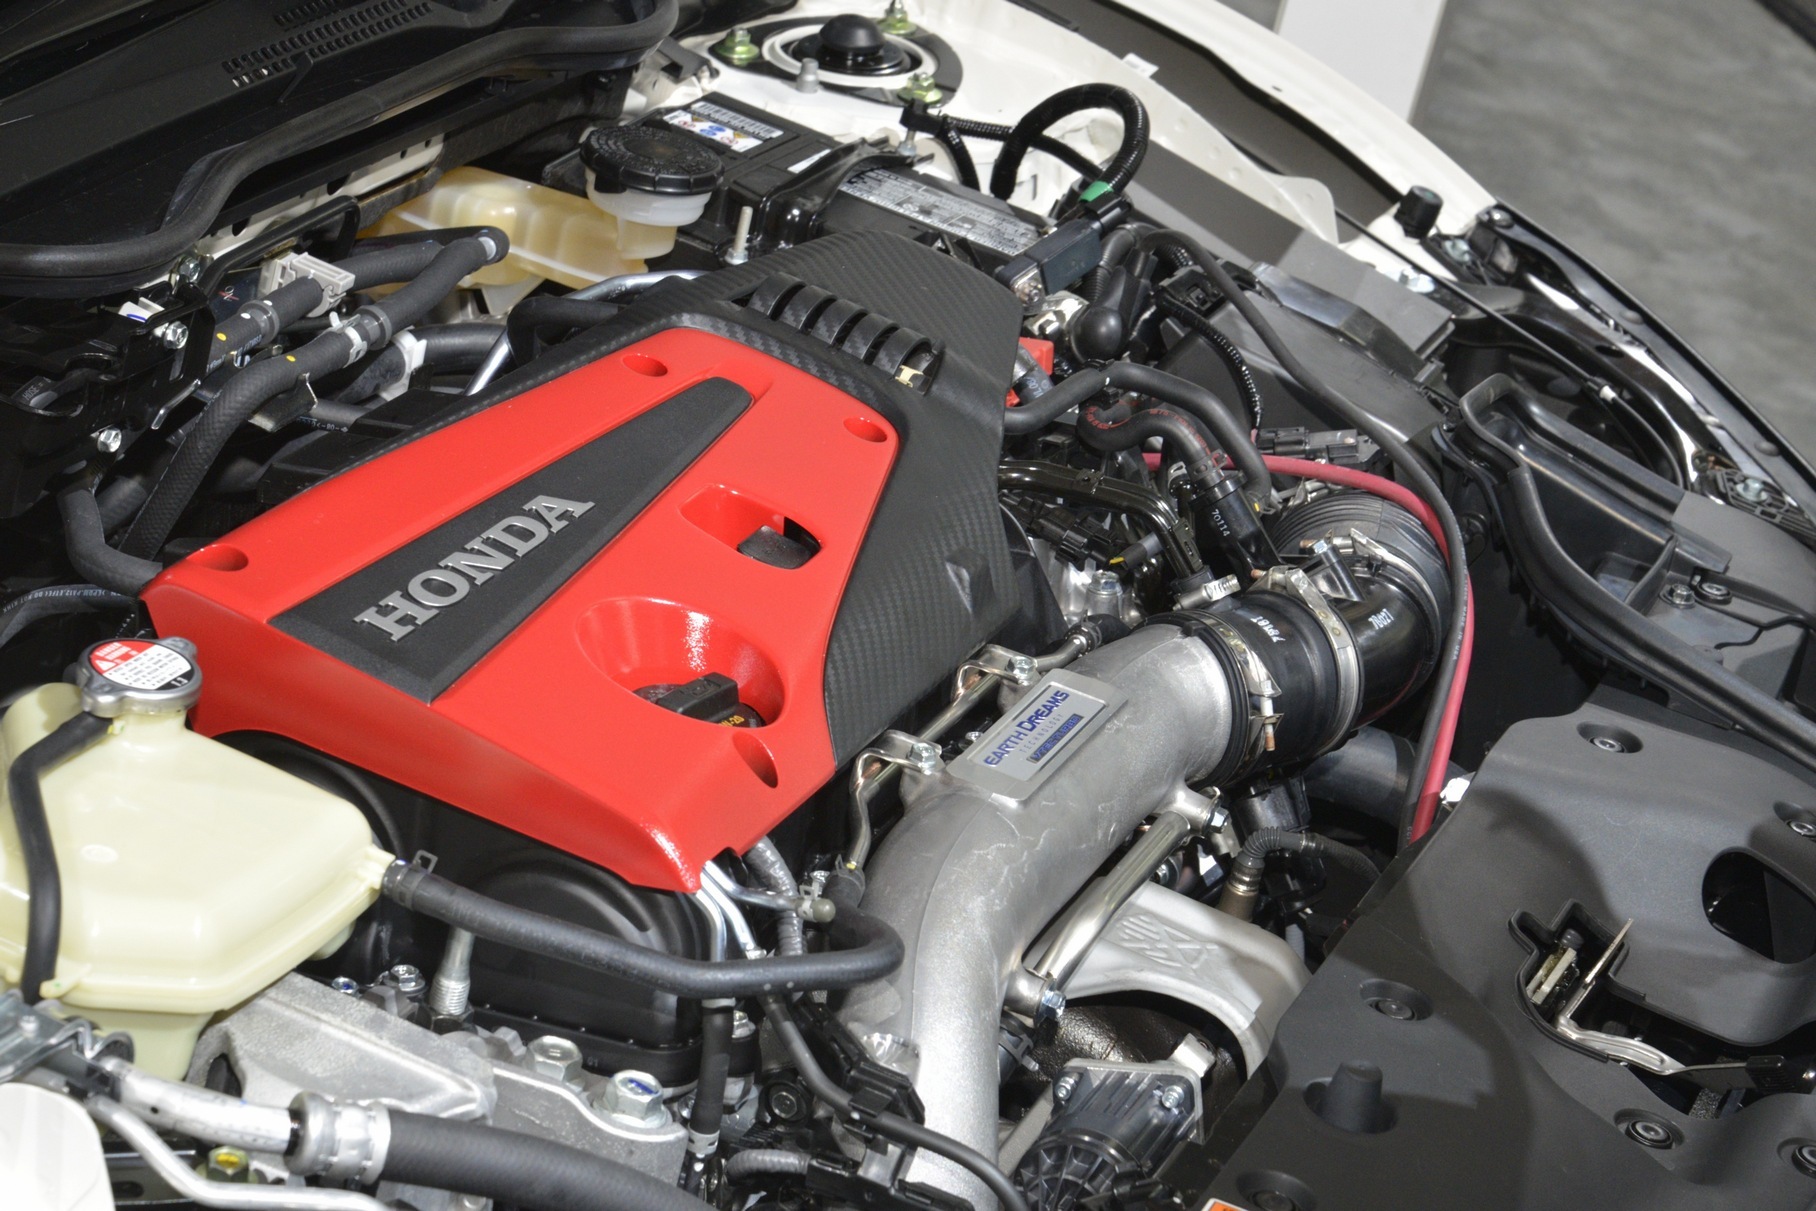 Двухлитровый турбомотор Honda K20C1 развивает от 310 до 330 лошадиных сил в зависимости от исполнения. Самую мощную версию получил [новый Civic Type-R](https://motor.ru/news/newtyper-21-07-2022.htm), премьера которого состоялась в минувшем июле.